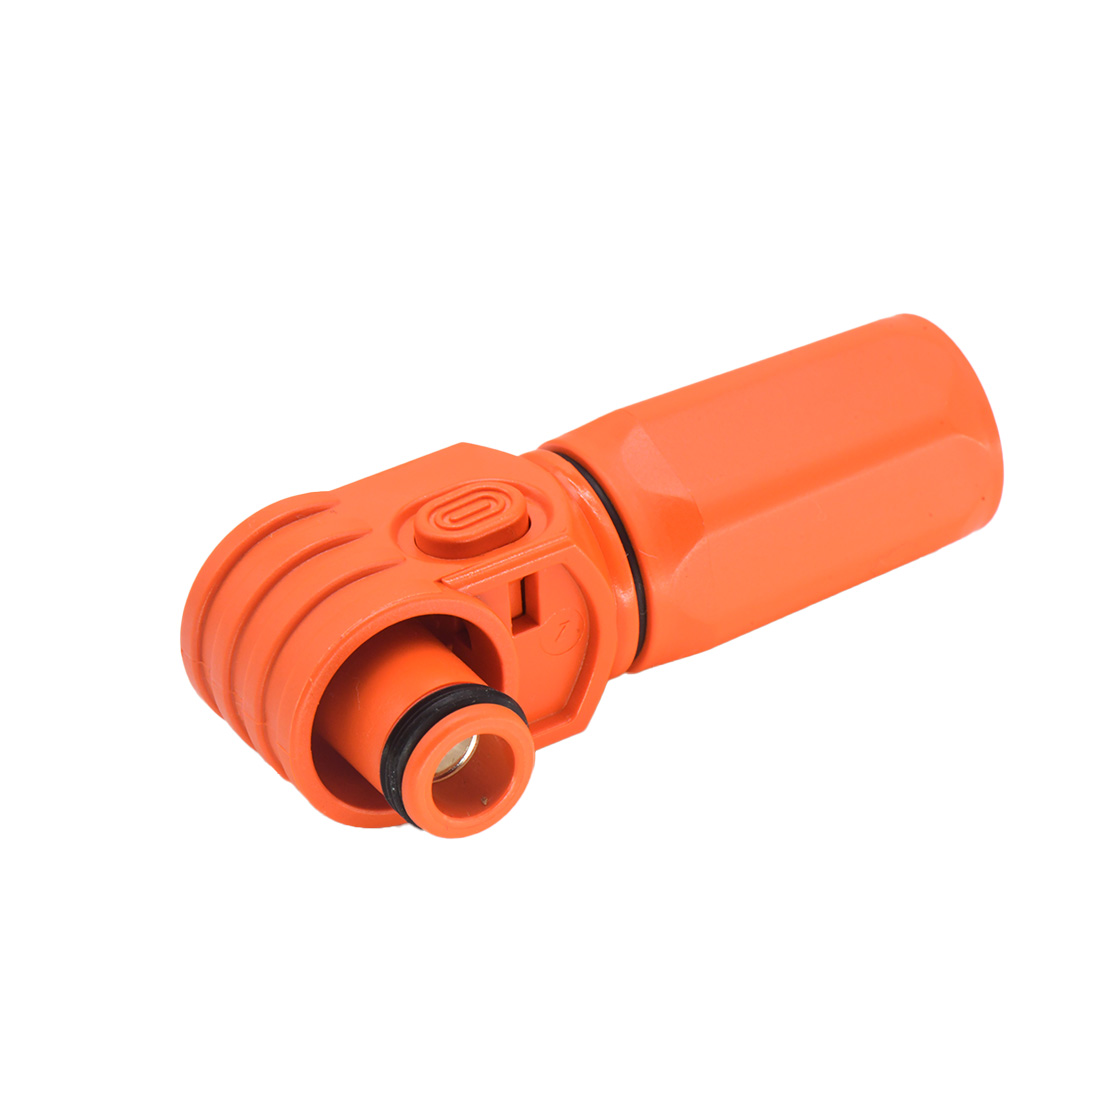 单芯储能连接器200A正极插头 接线50mm² 橙色 90°弯头